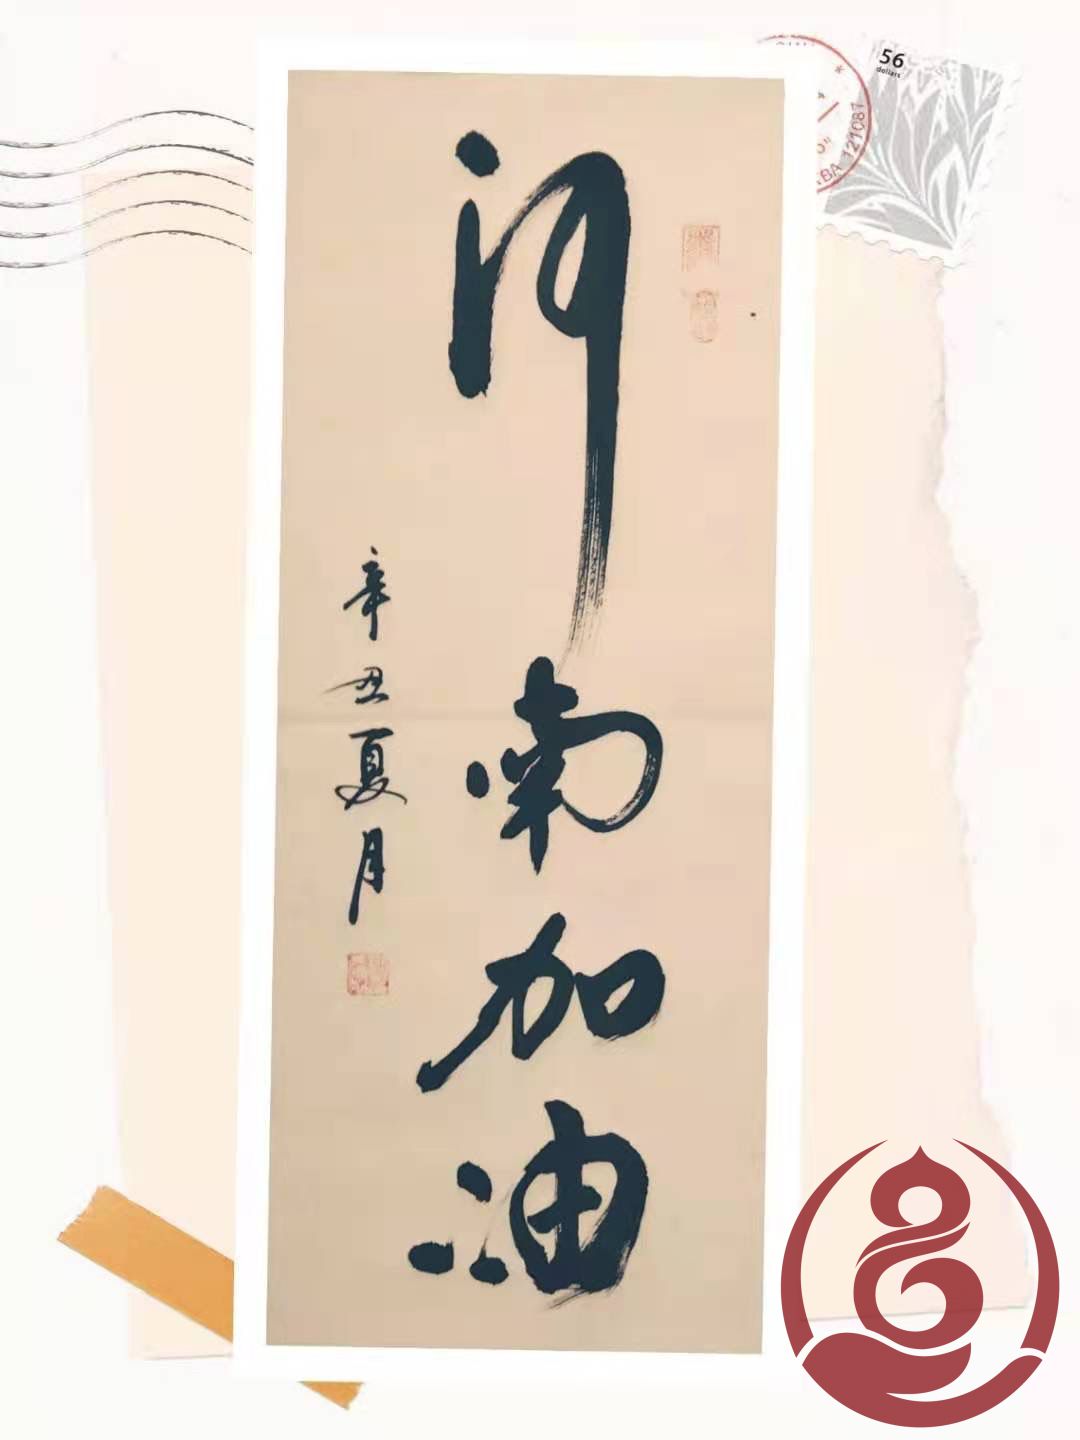 丹青迎盛世，妙笔迎新年——书法家刘光毅作品展览